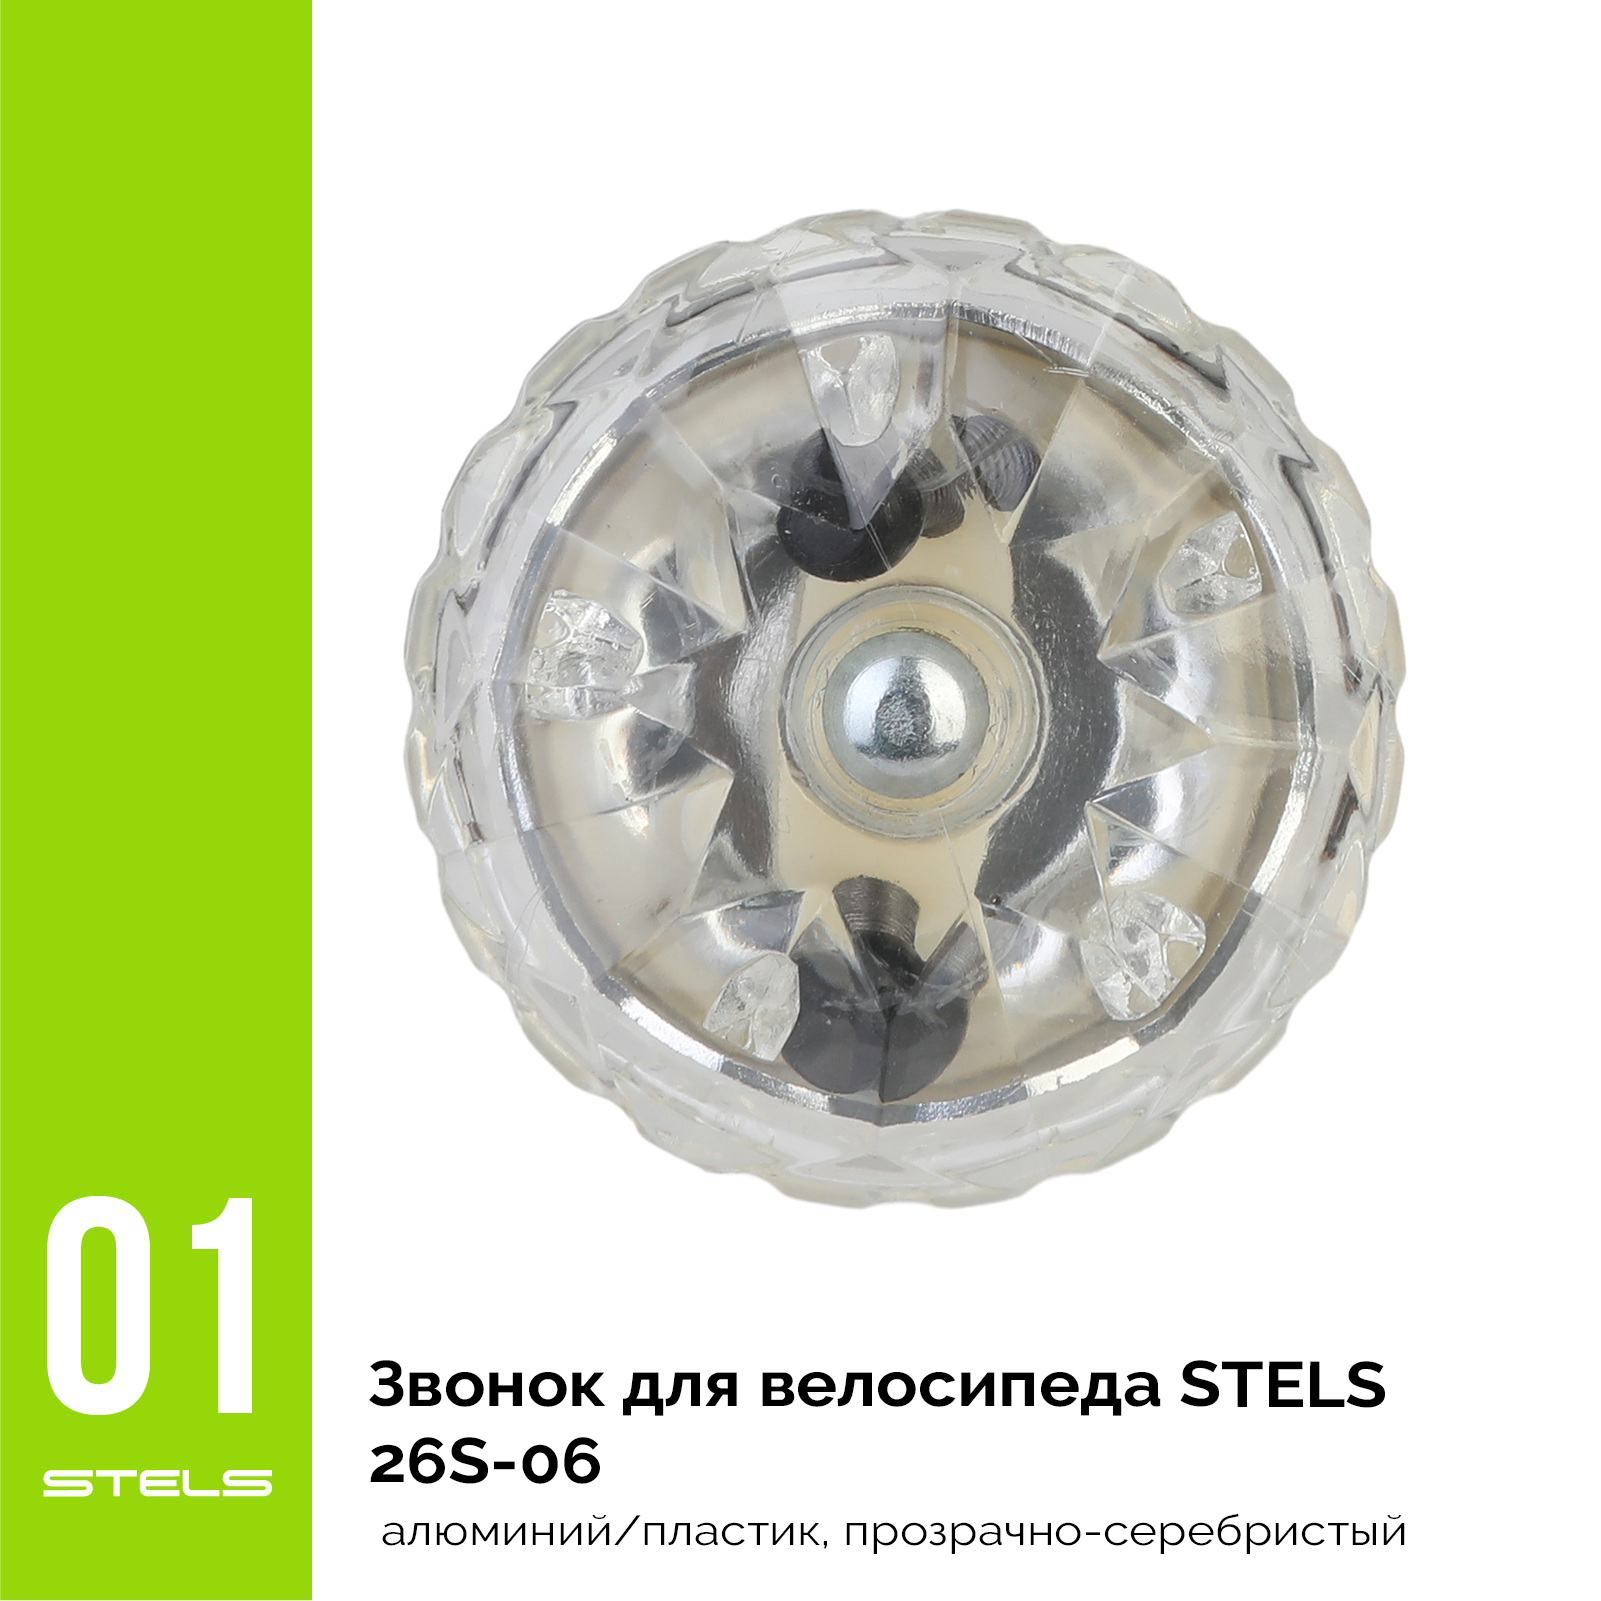 Звонок для велосипеда STELS 26S-06 алюминий/пластик, прозрачно-серебристый VELOSALE